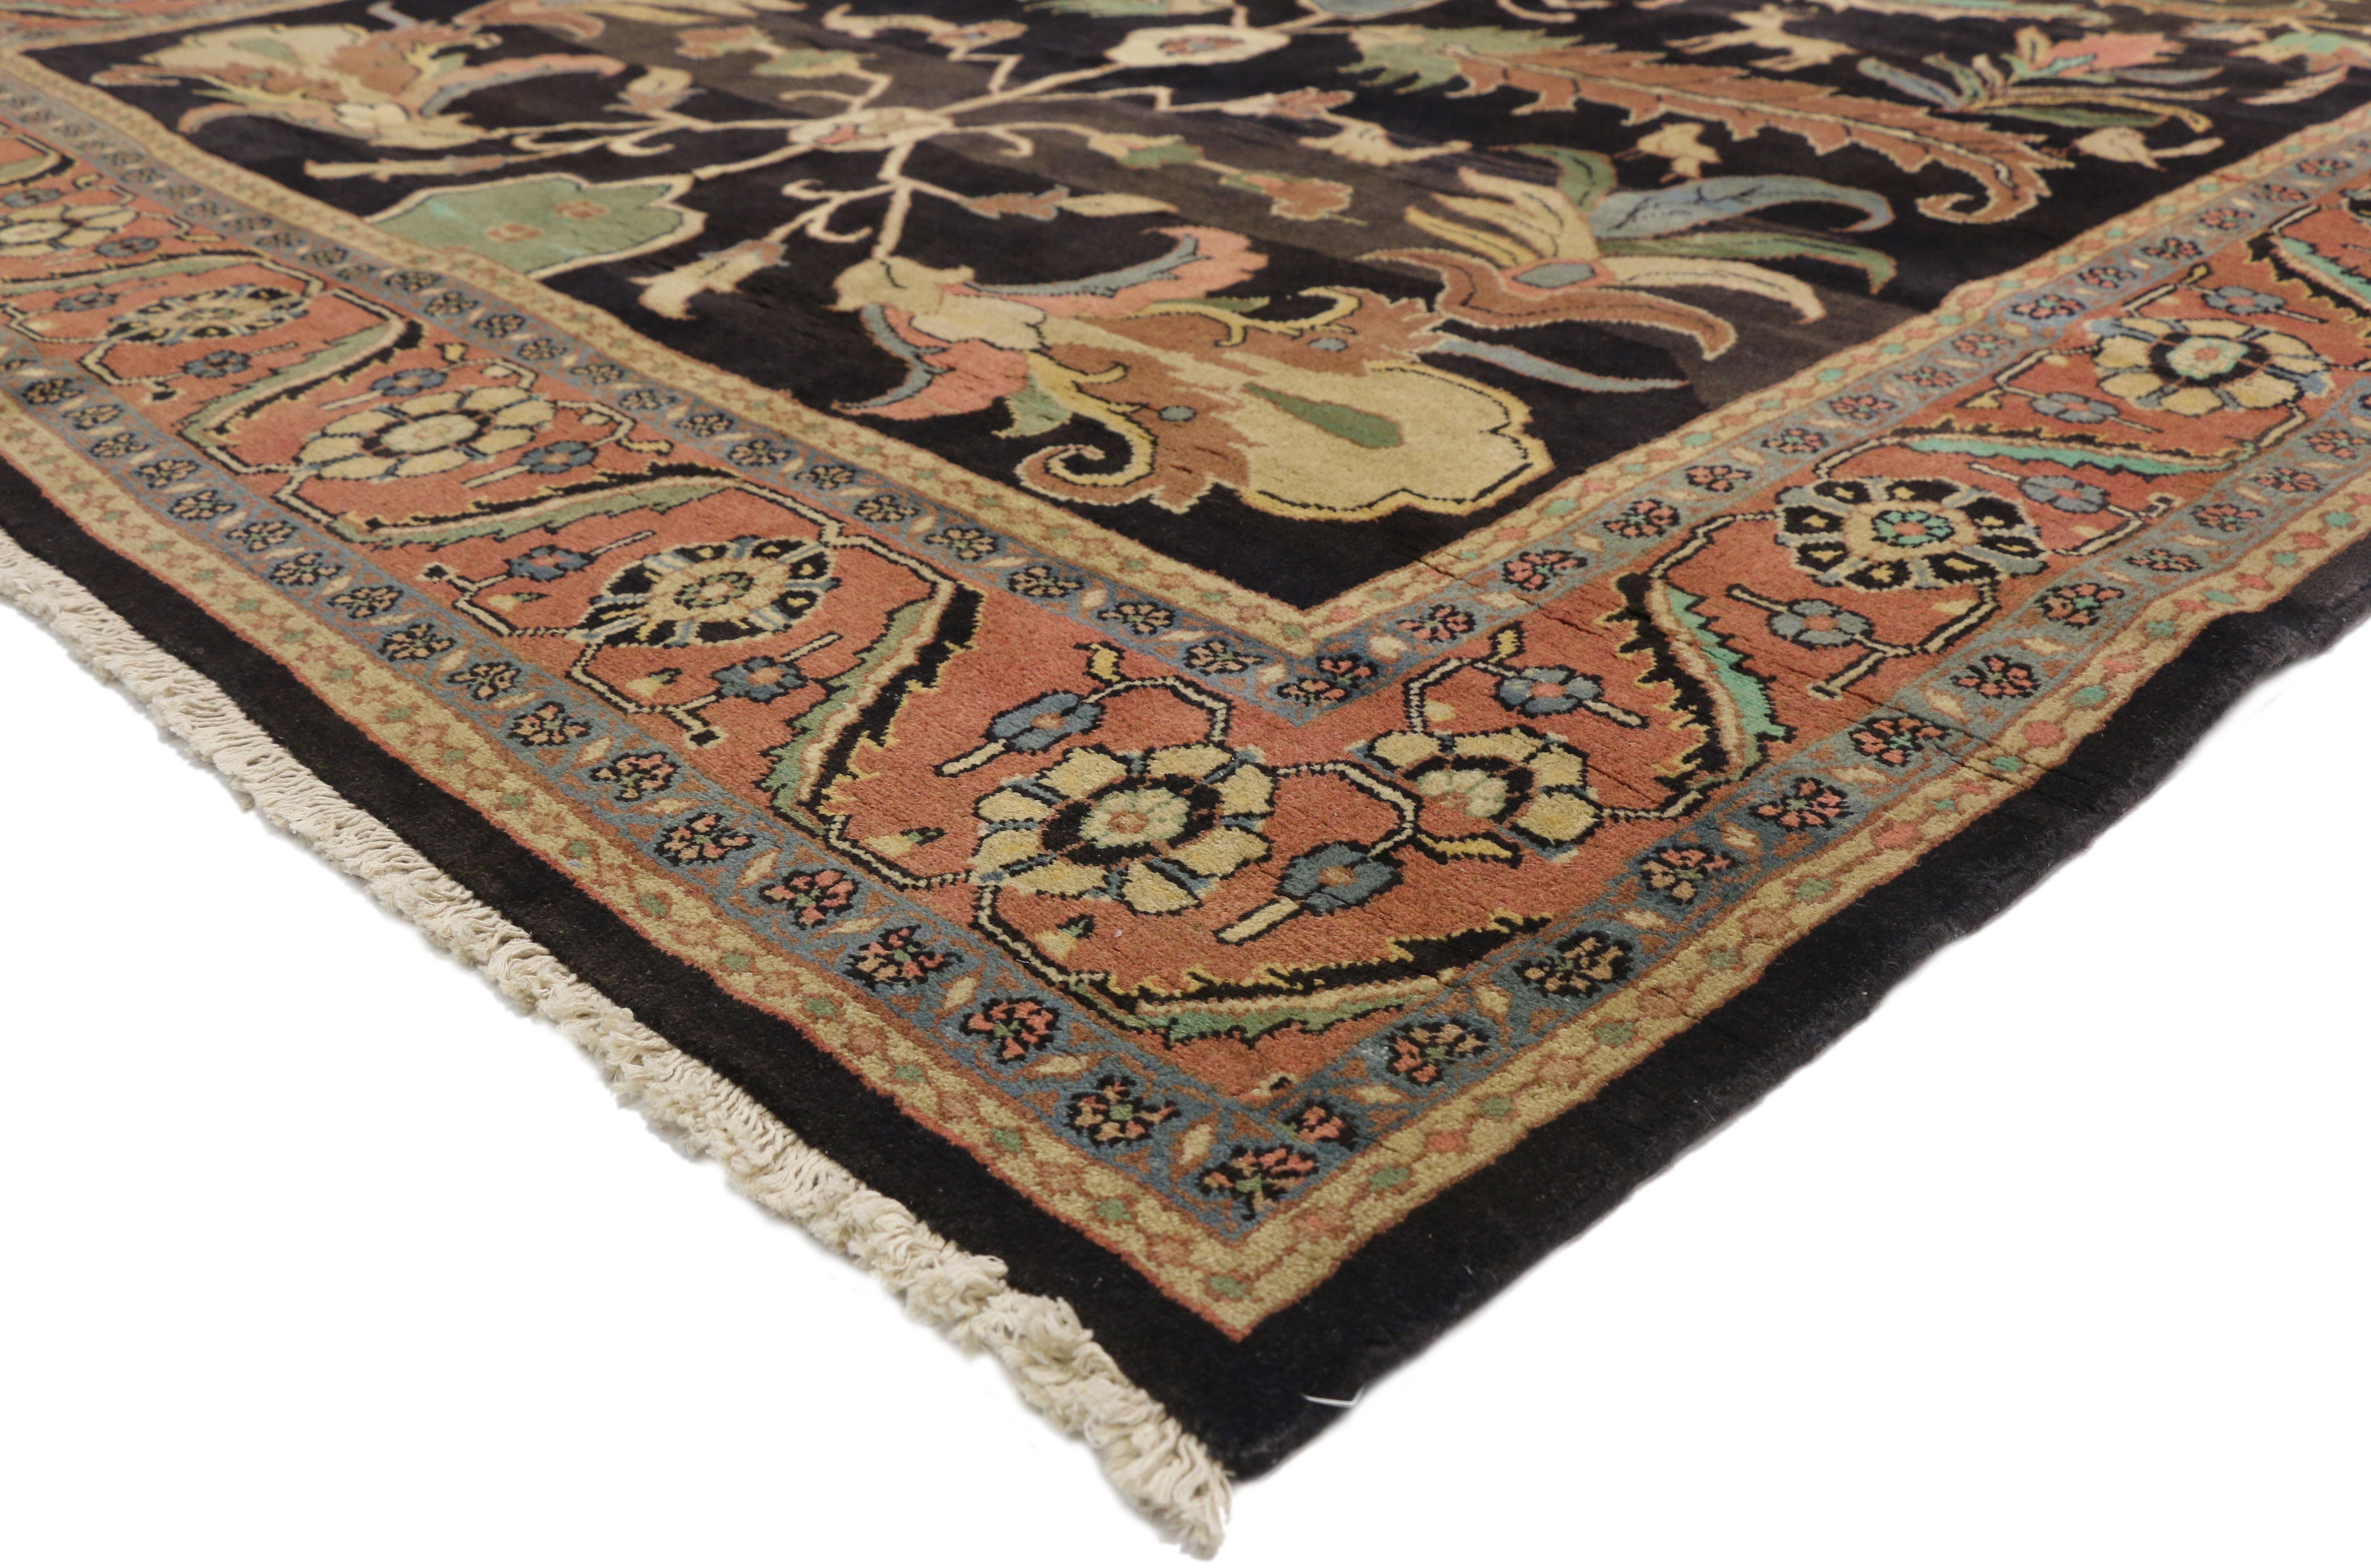 75836 Vintage Persian Mahal Rug Inspired by William Morris, 06'11 x 15'02. Die persischen Mahal-Teppiche stammen aus der Region Mahallat im zentralen Nordwesten des Iran und werden für ihre einzigartigen Eigenschaften und ihre unvergleichliche